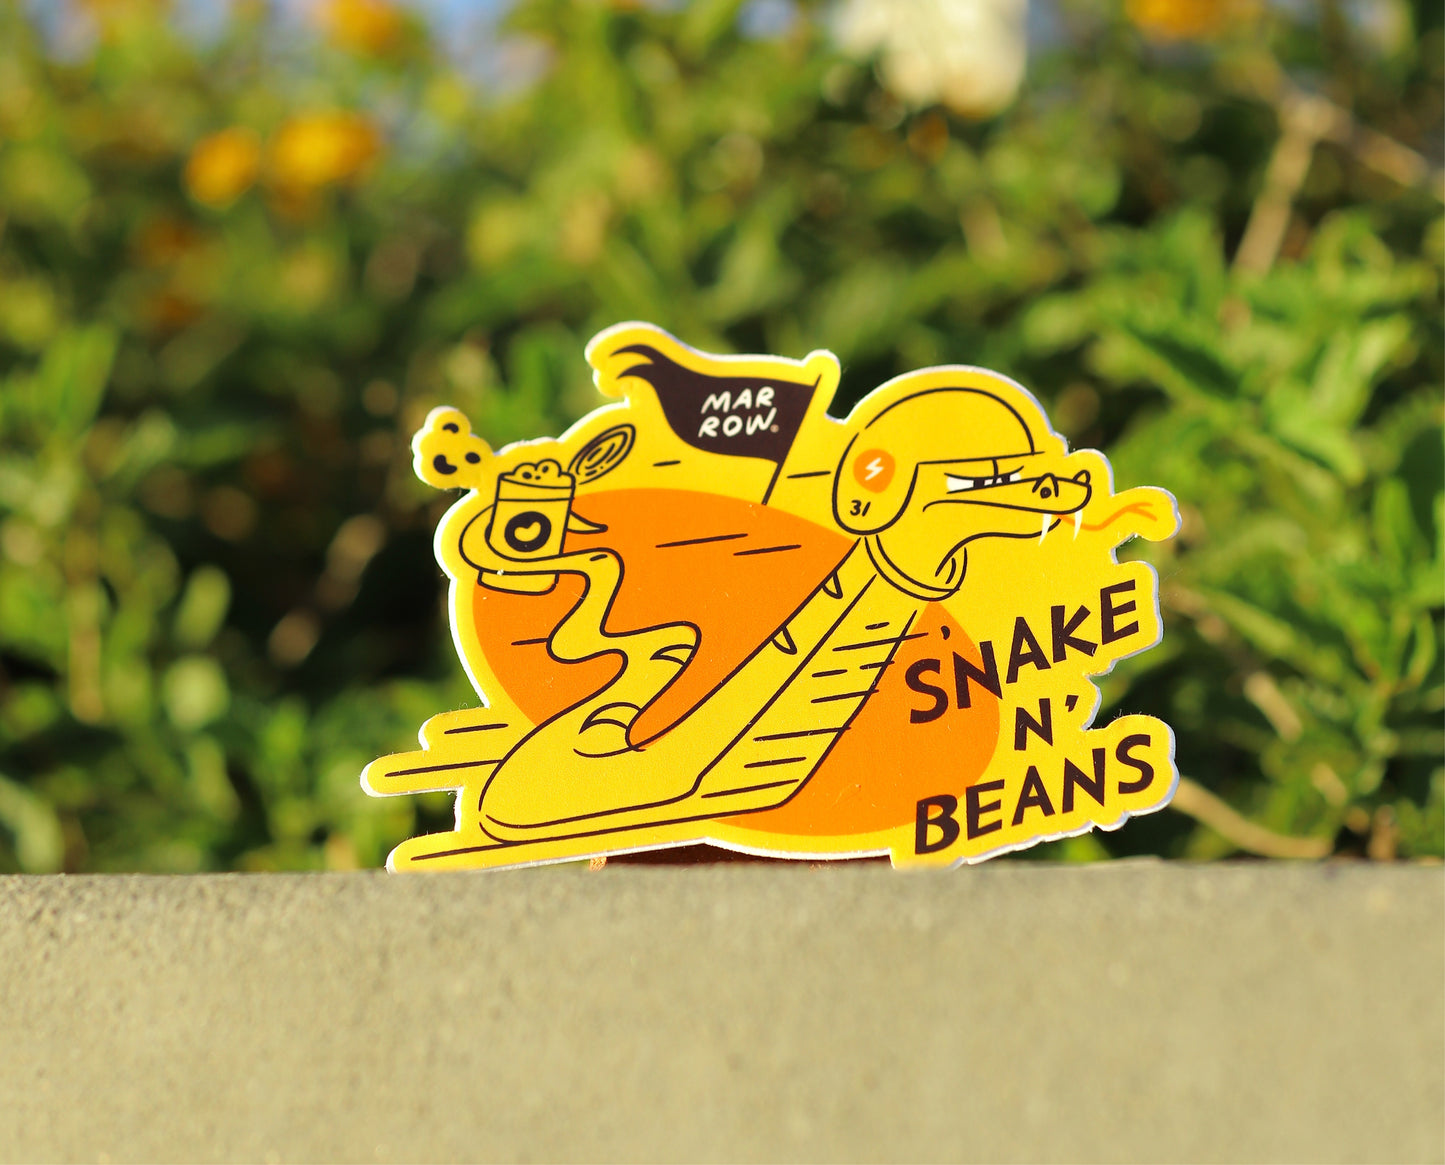 Snake an’ Beans